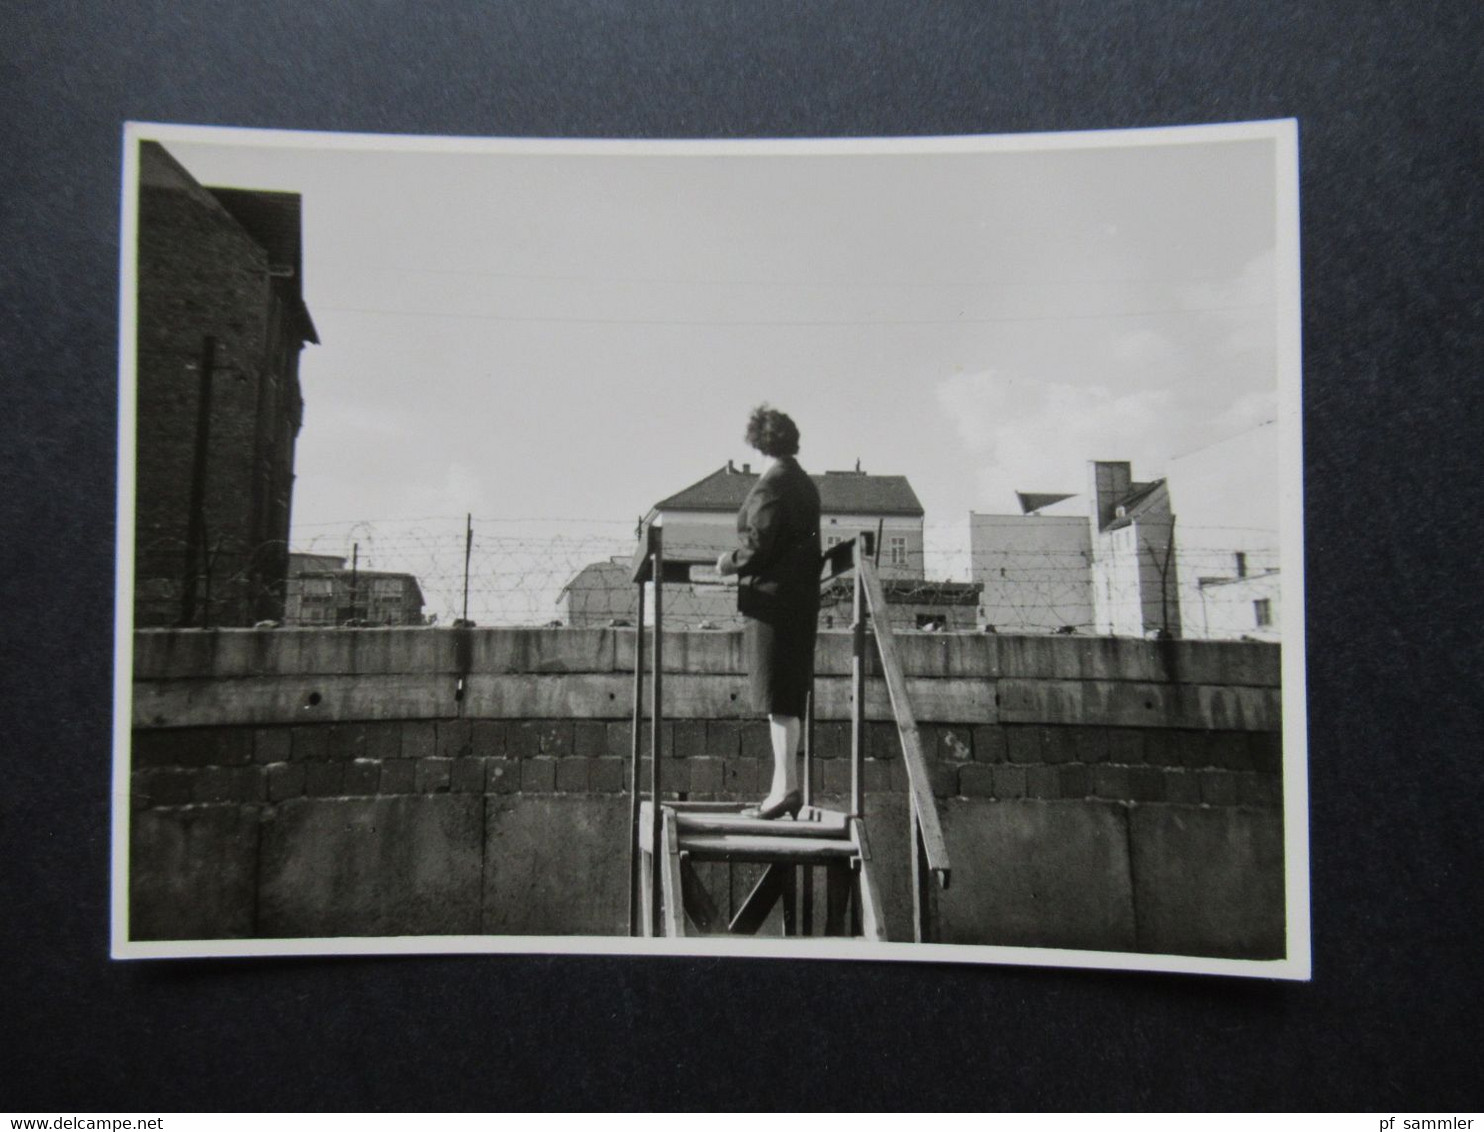 Berlin Fotos ca.1962 mit Berliner Mauer z.B. Spruch 13000 Frauen von Ihren Männern getrennt und. Neue zeit Union Verlag